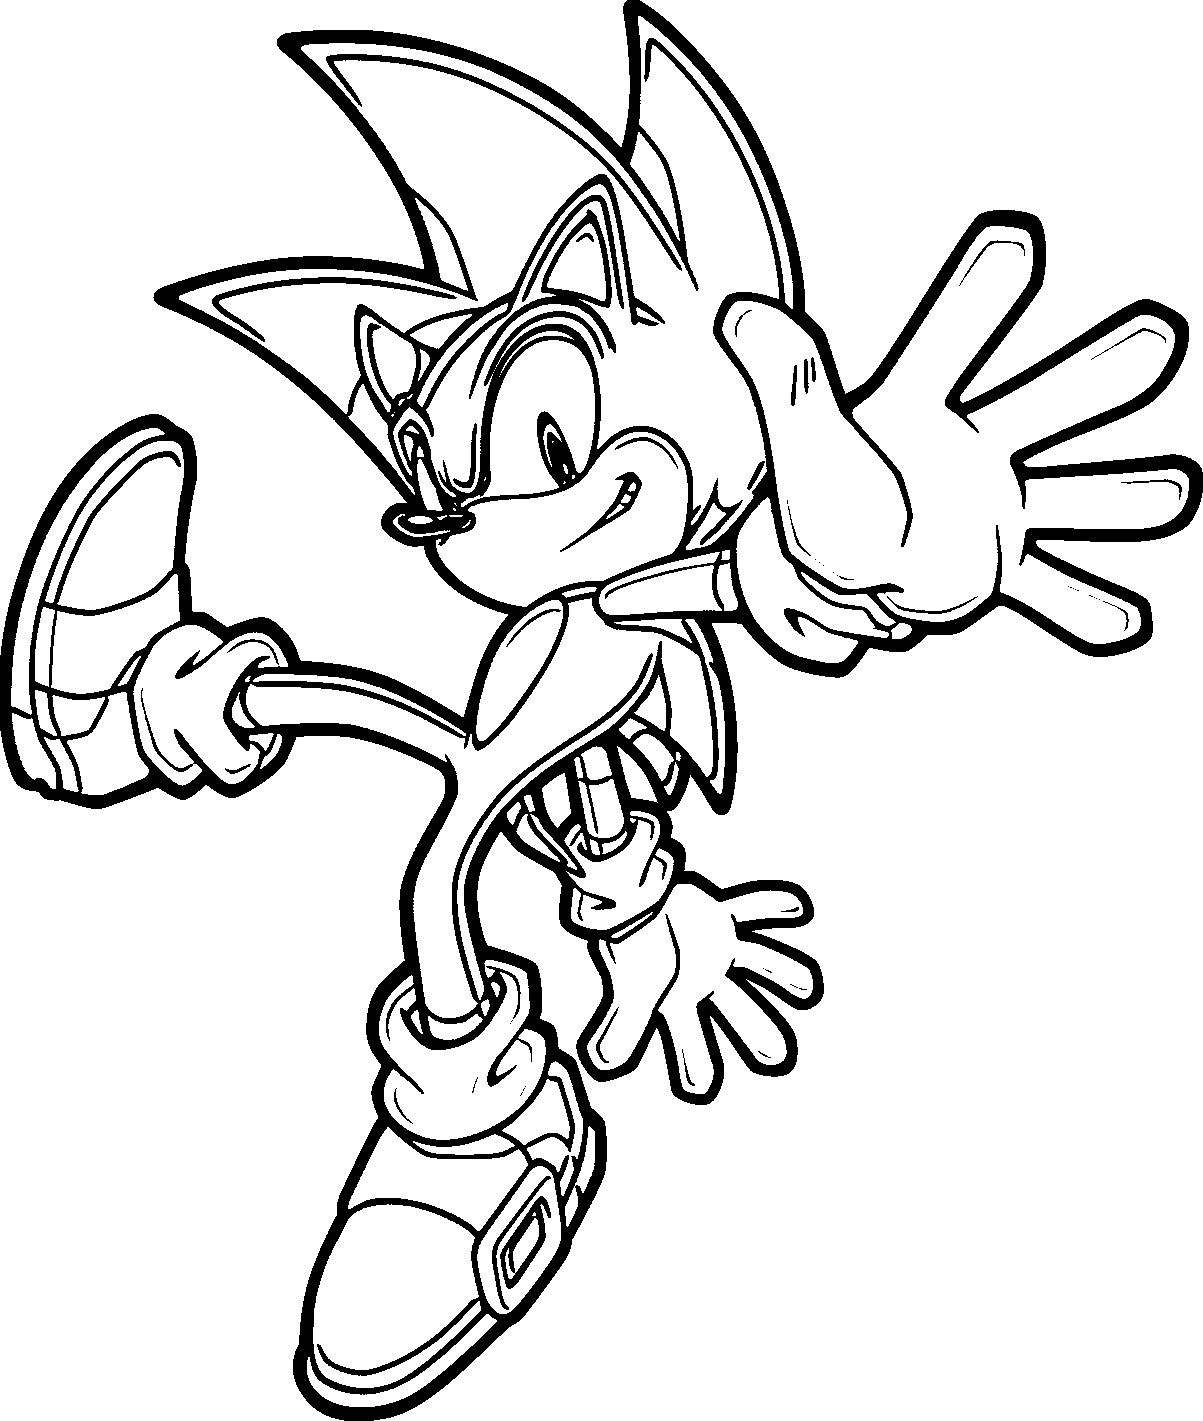 Disegno di Sonic il riccio da colorare